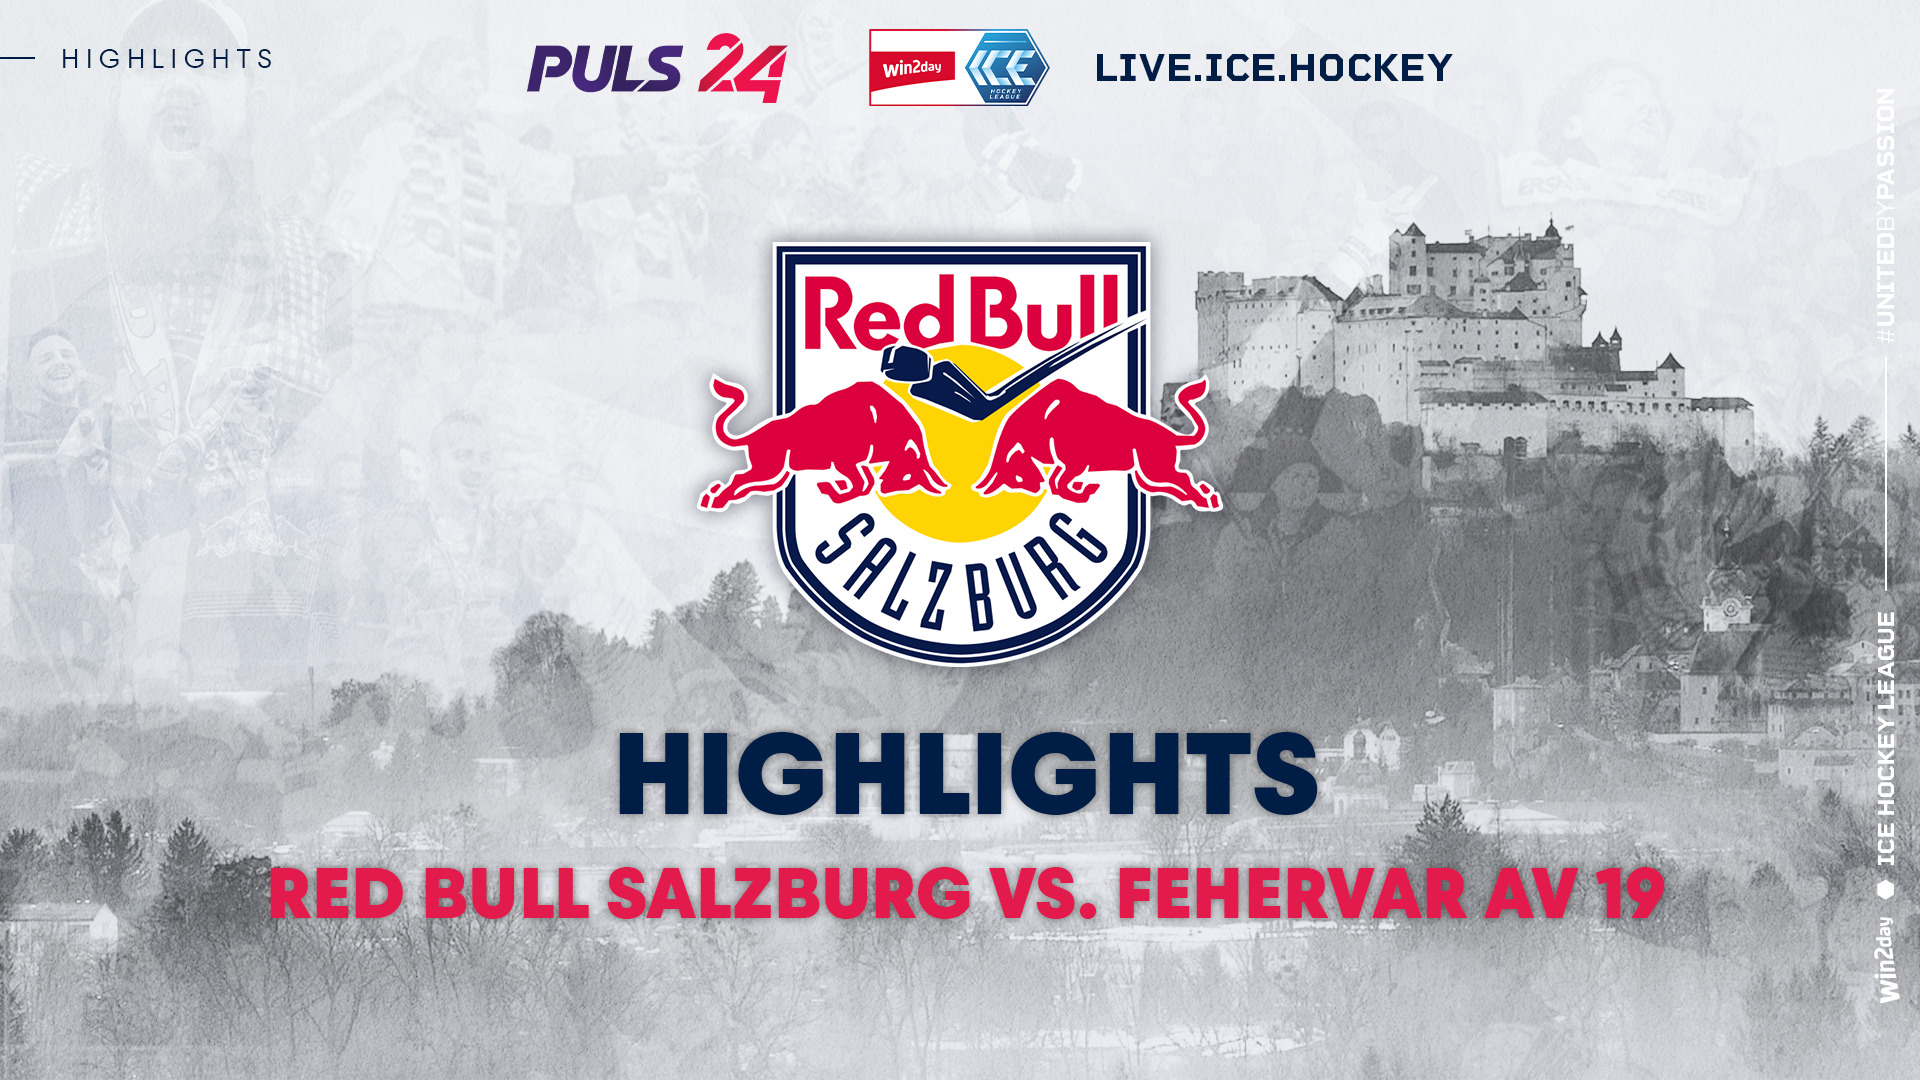 Highlights: EC Red Bull Salzburg vs. Fehervar AV19